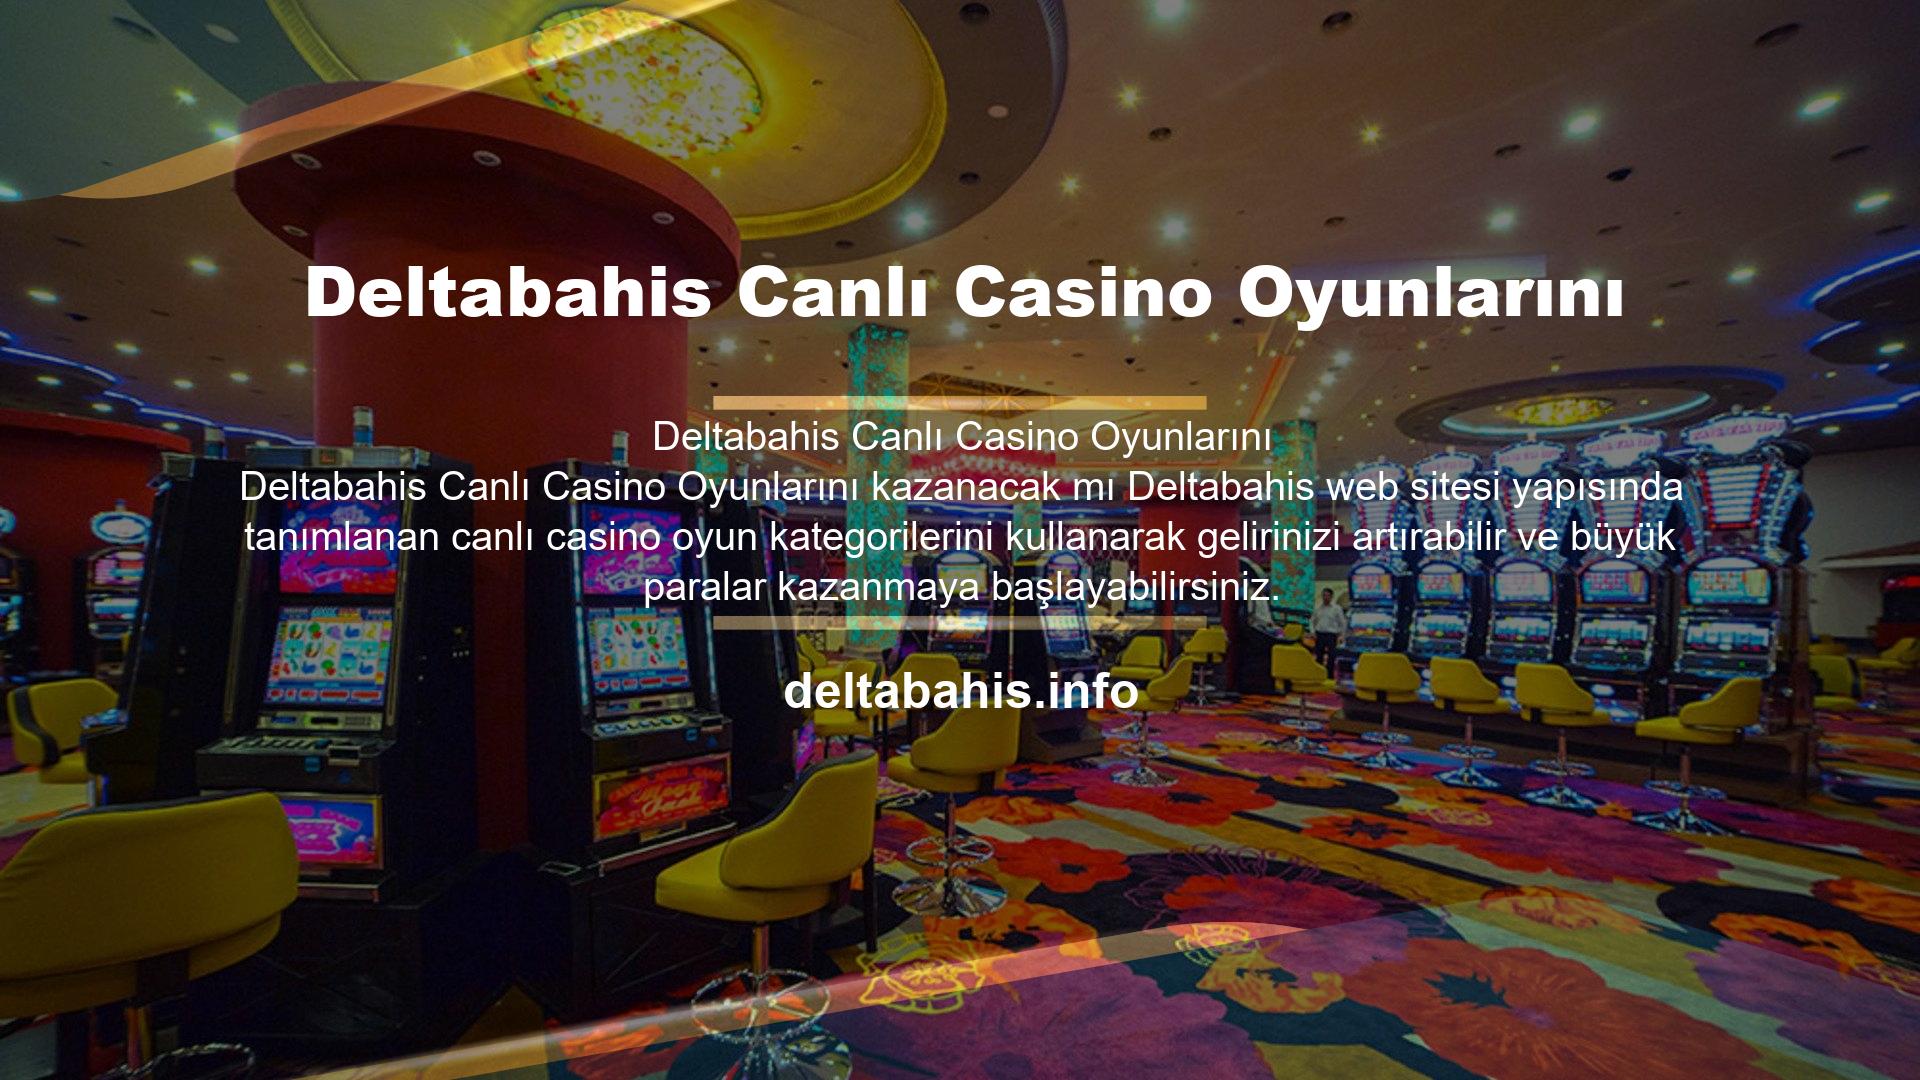 Deltabahis canlı casino oyun alternatifleri oldukça ünlü ve kazançlıdır